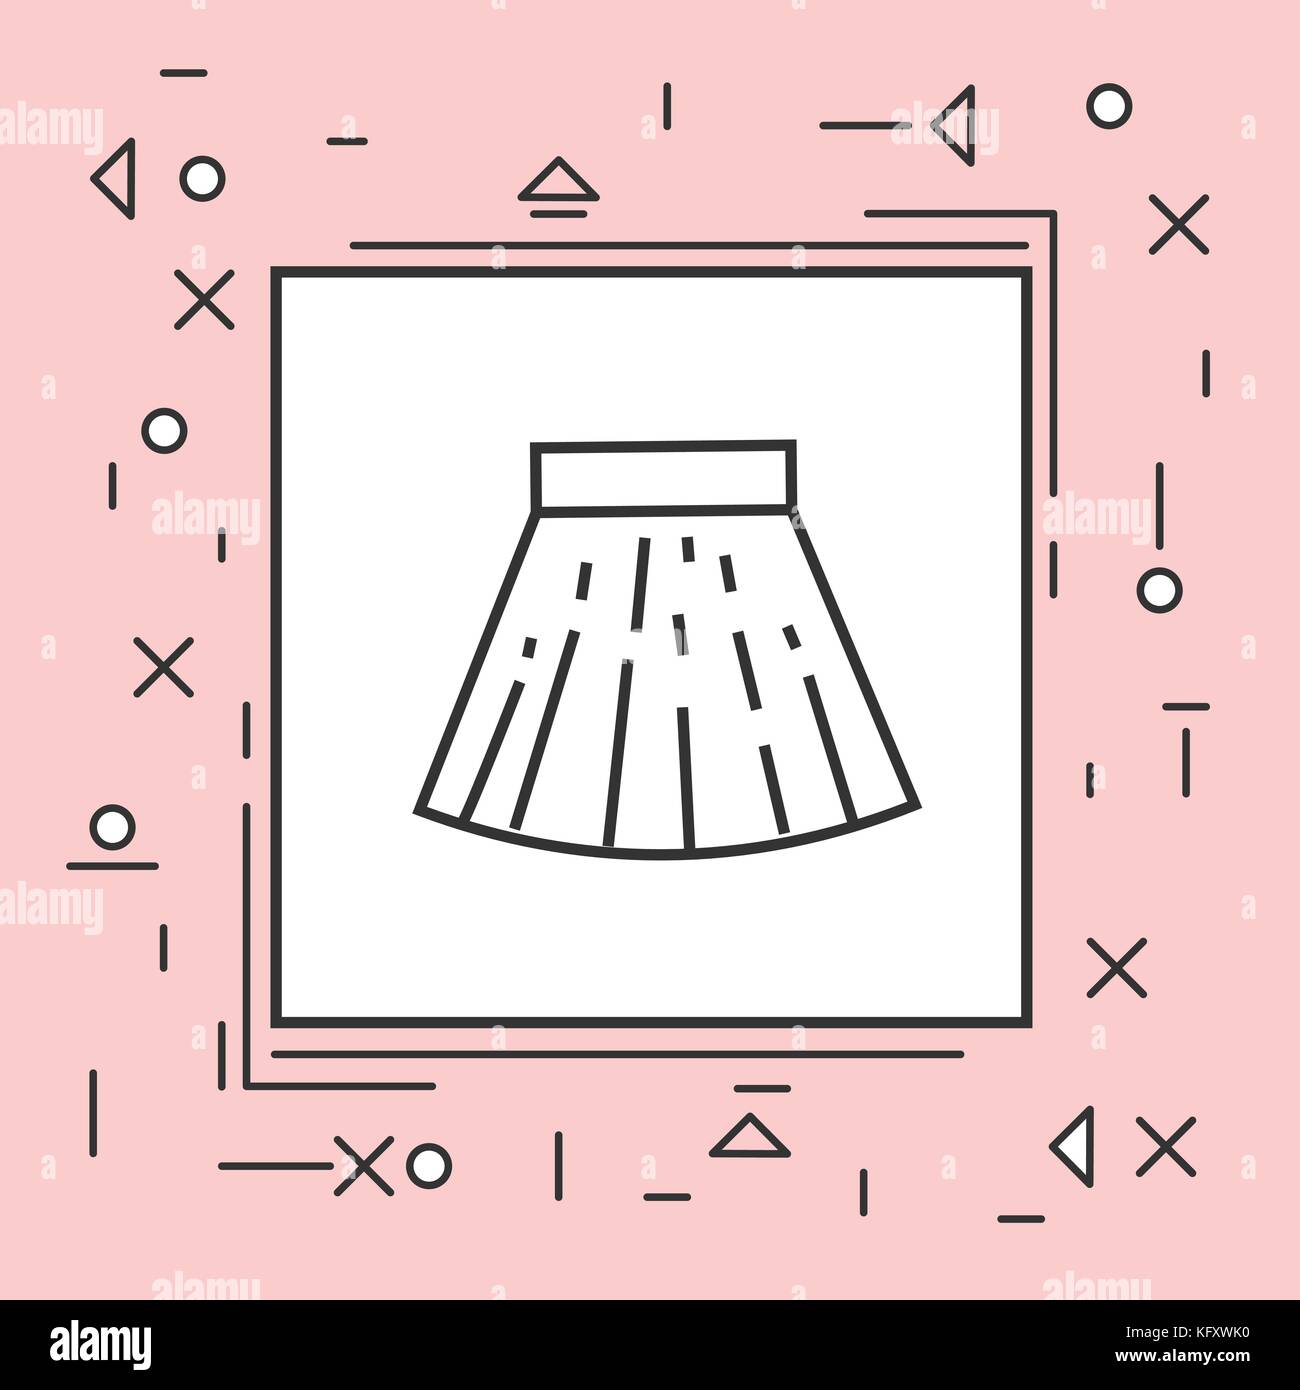 Girl in mini skirt Stock Vector Images - Alamy